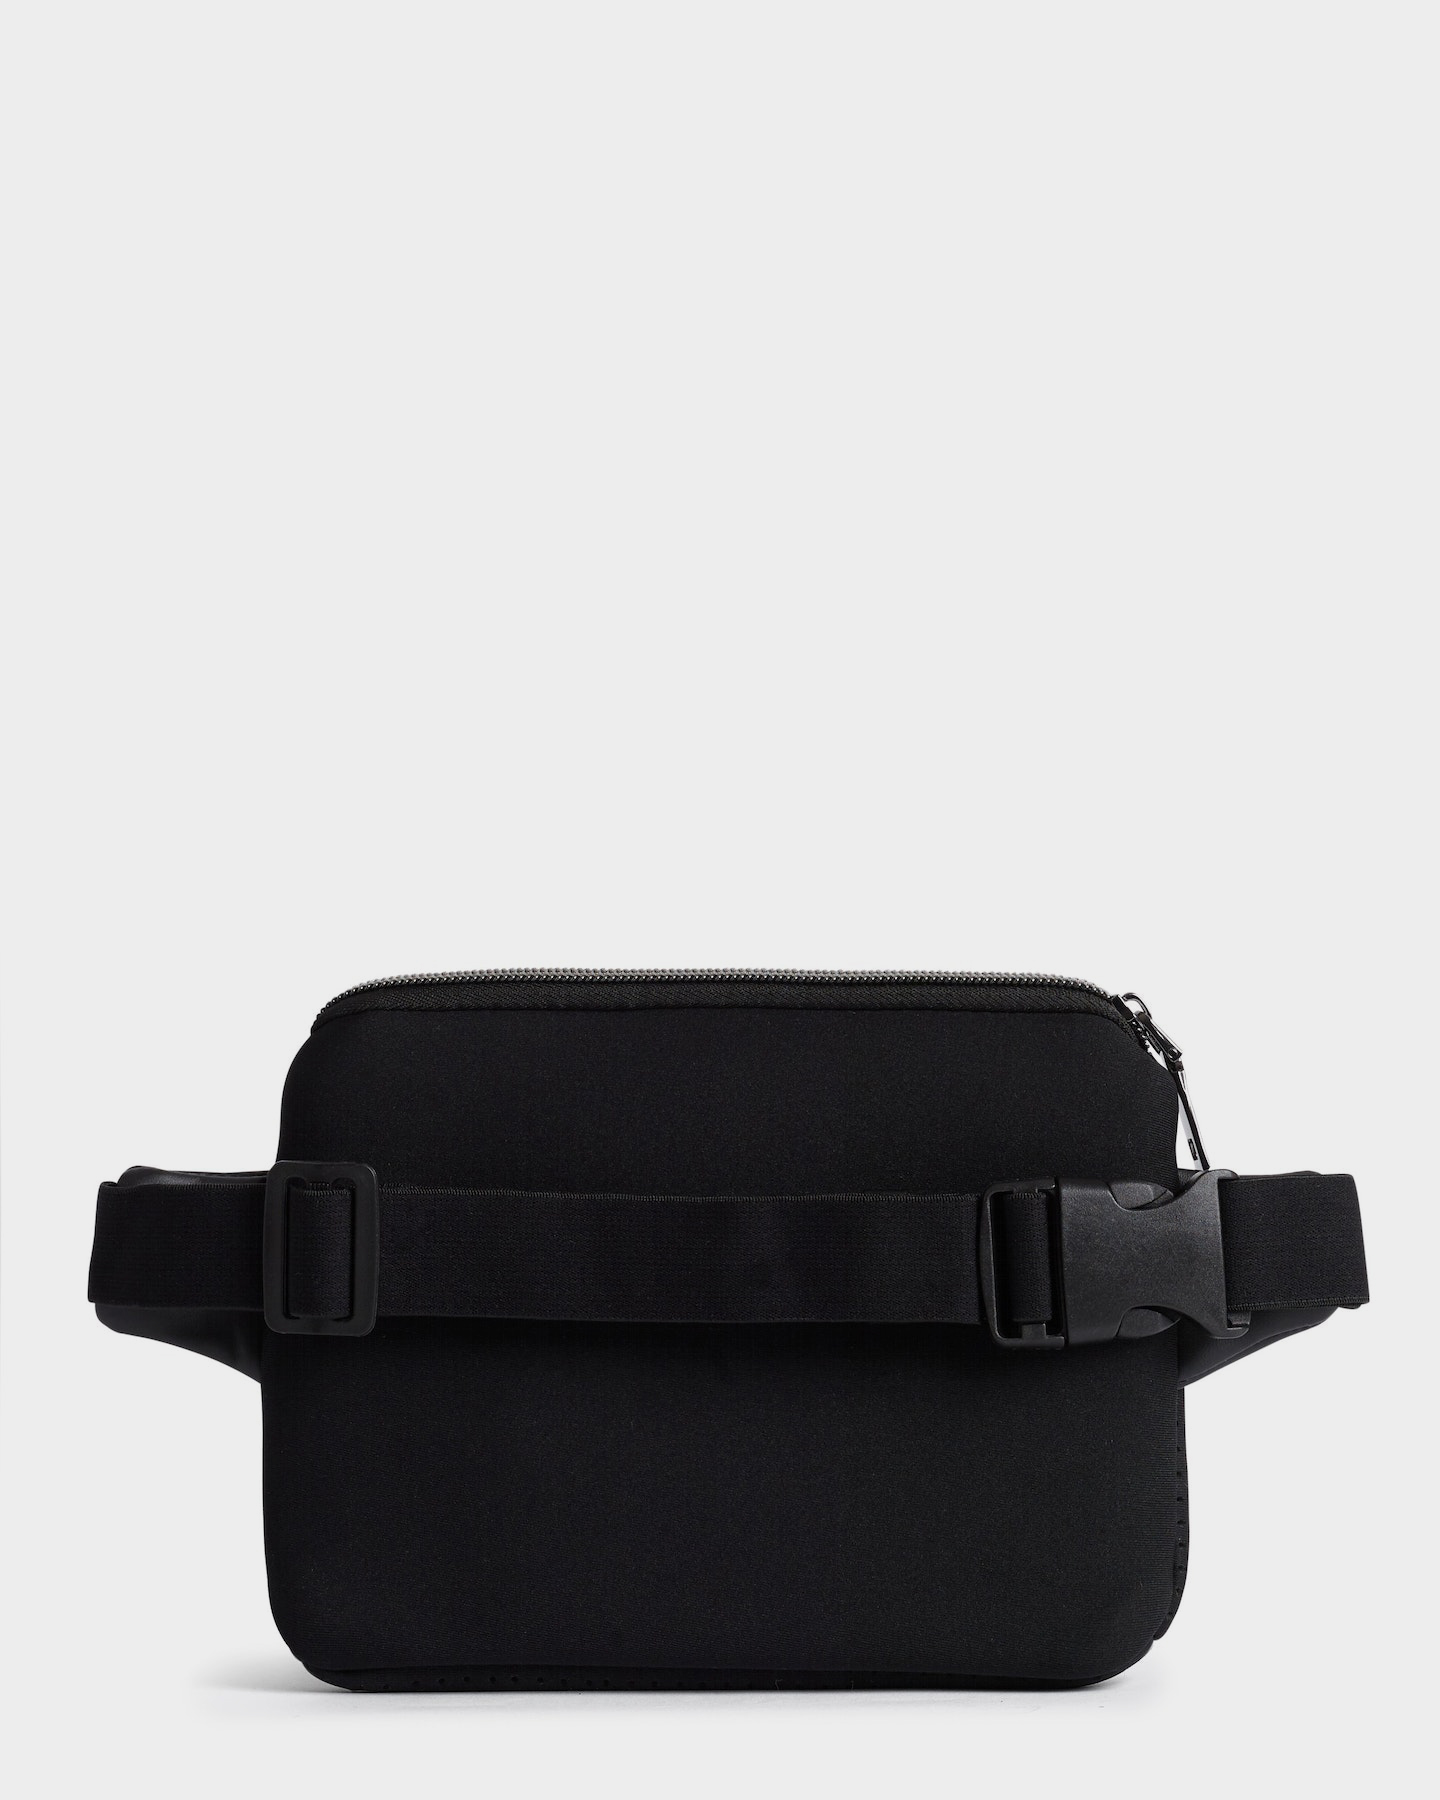 Prene Bags The Bum / Waist / Chest Bag (Black) Neoprene Bag - Black ...